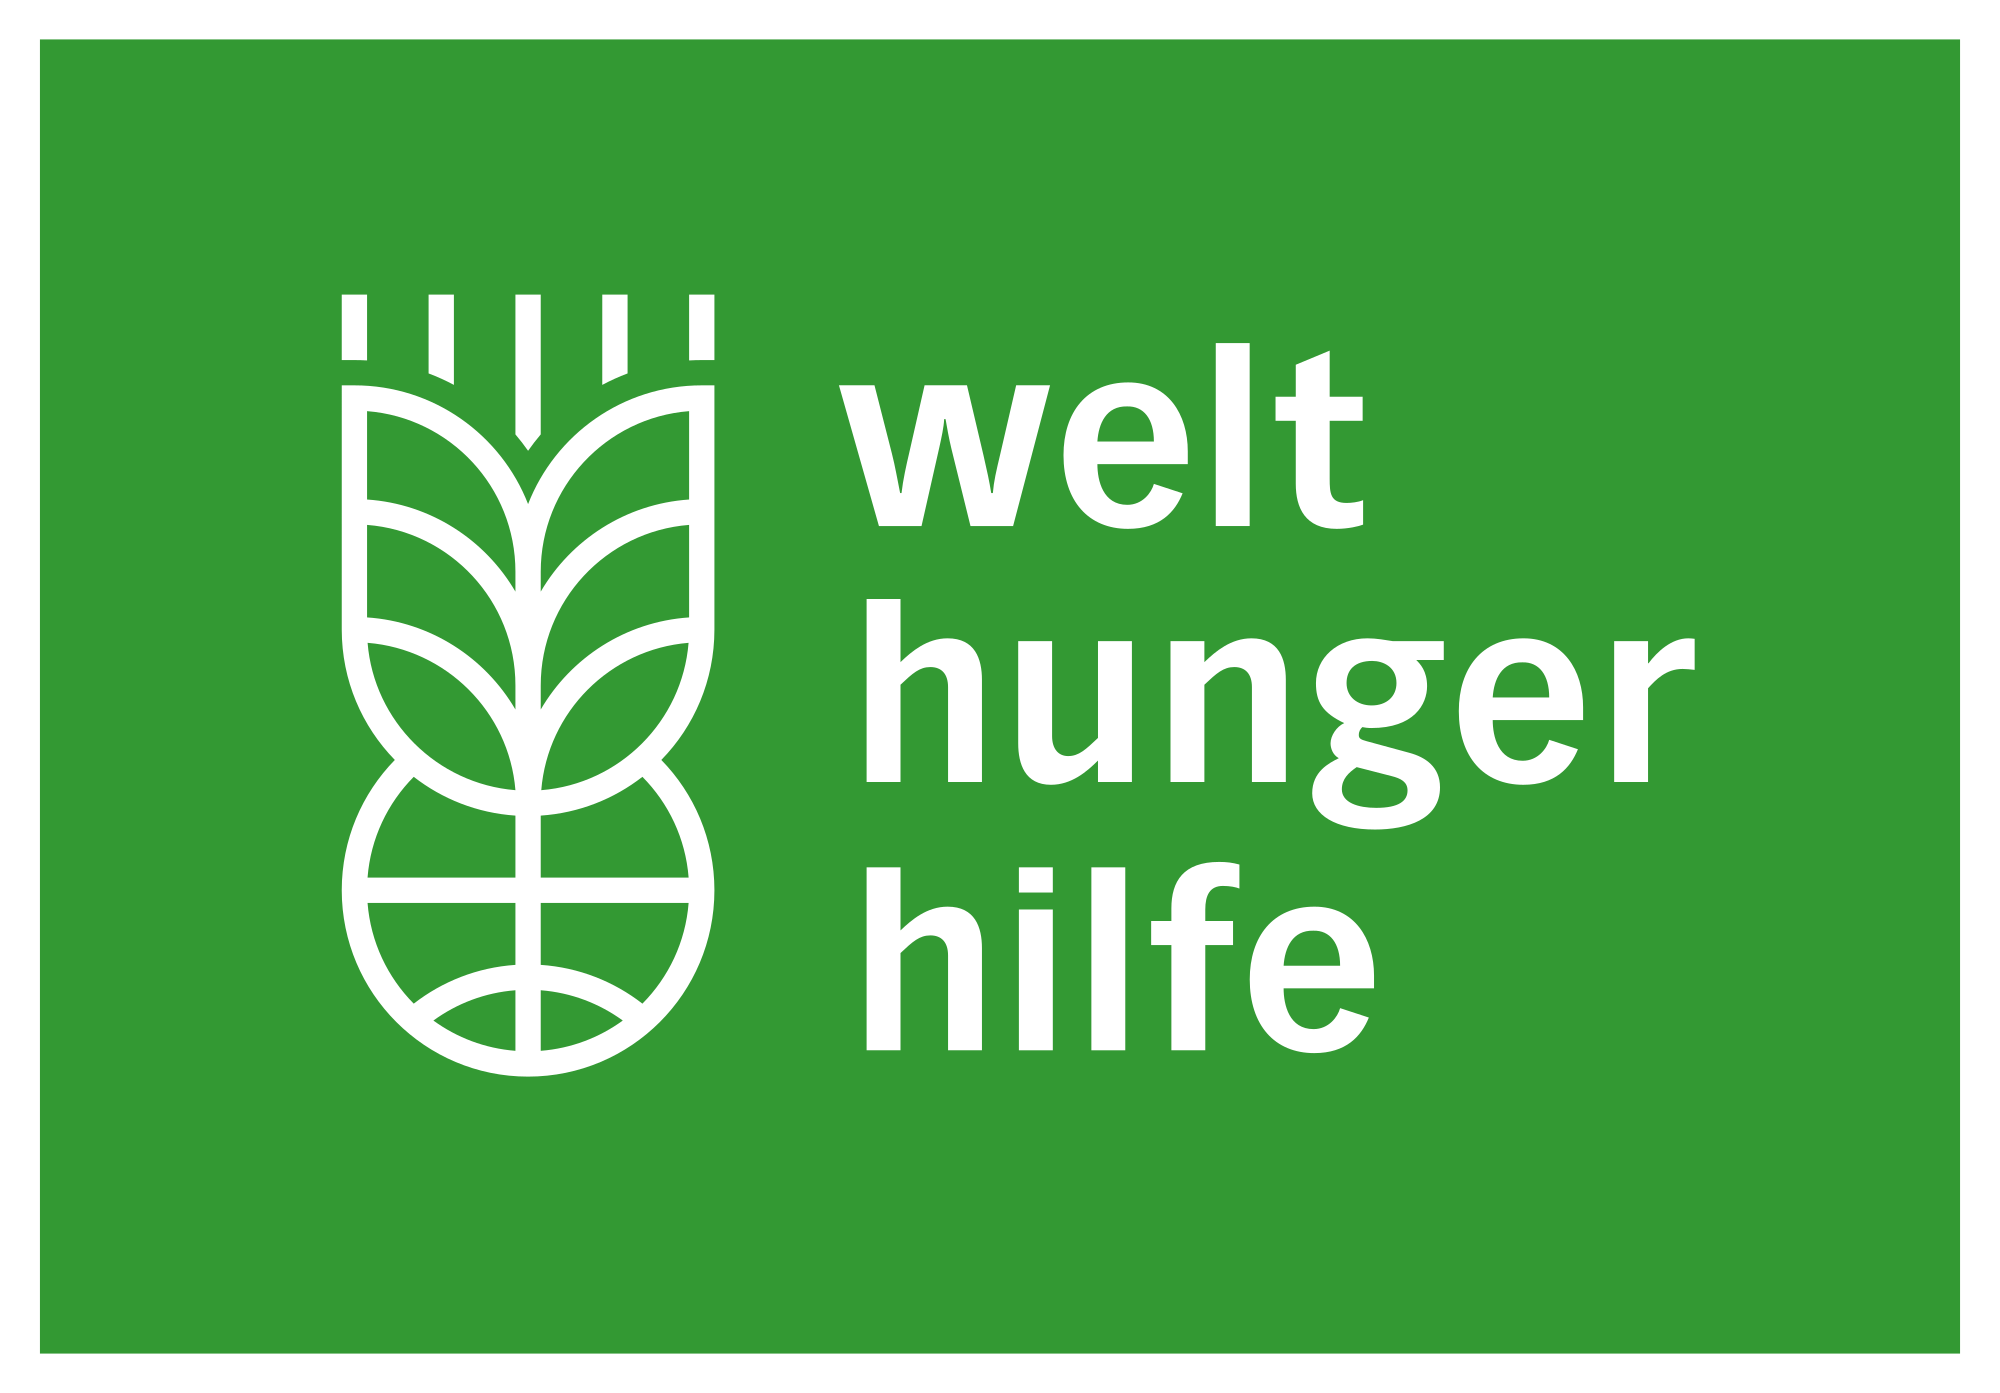 Logo: Welthungerhilfe